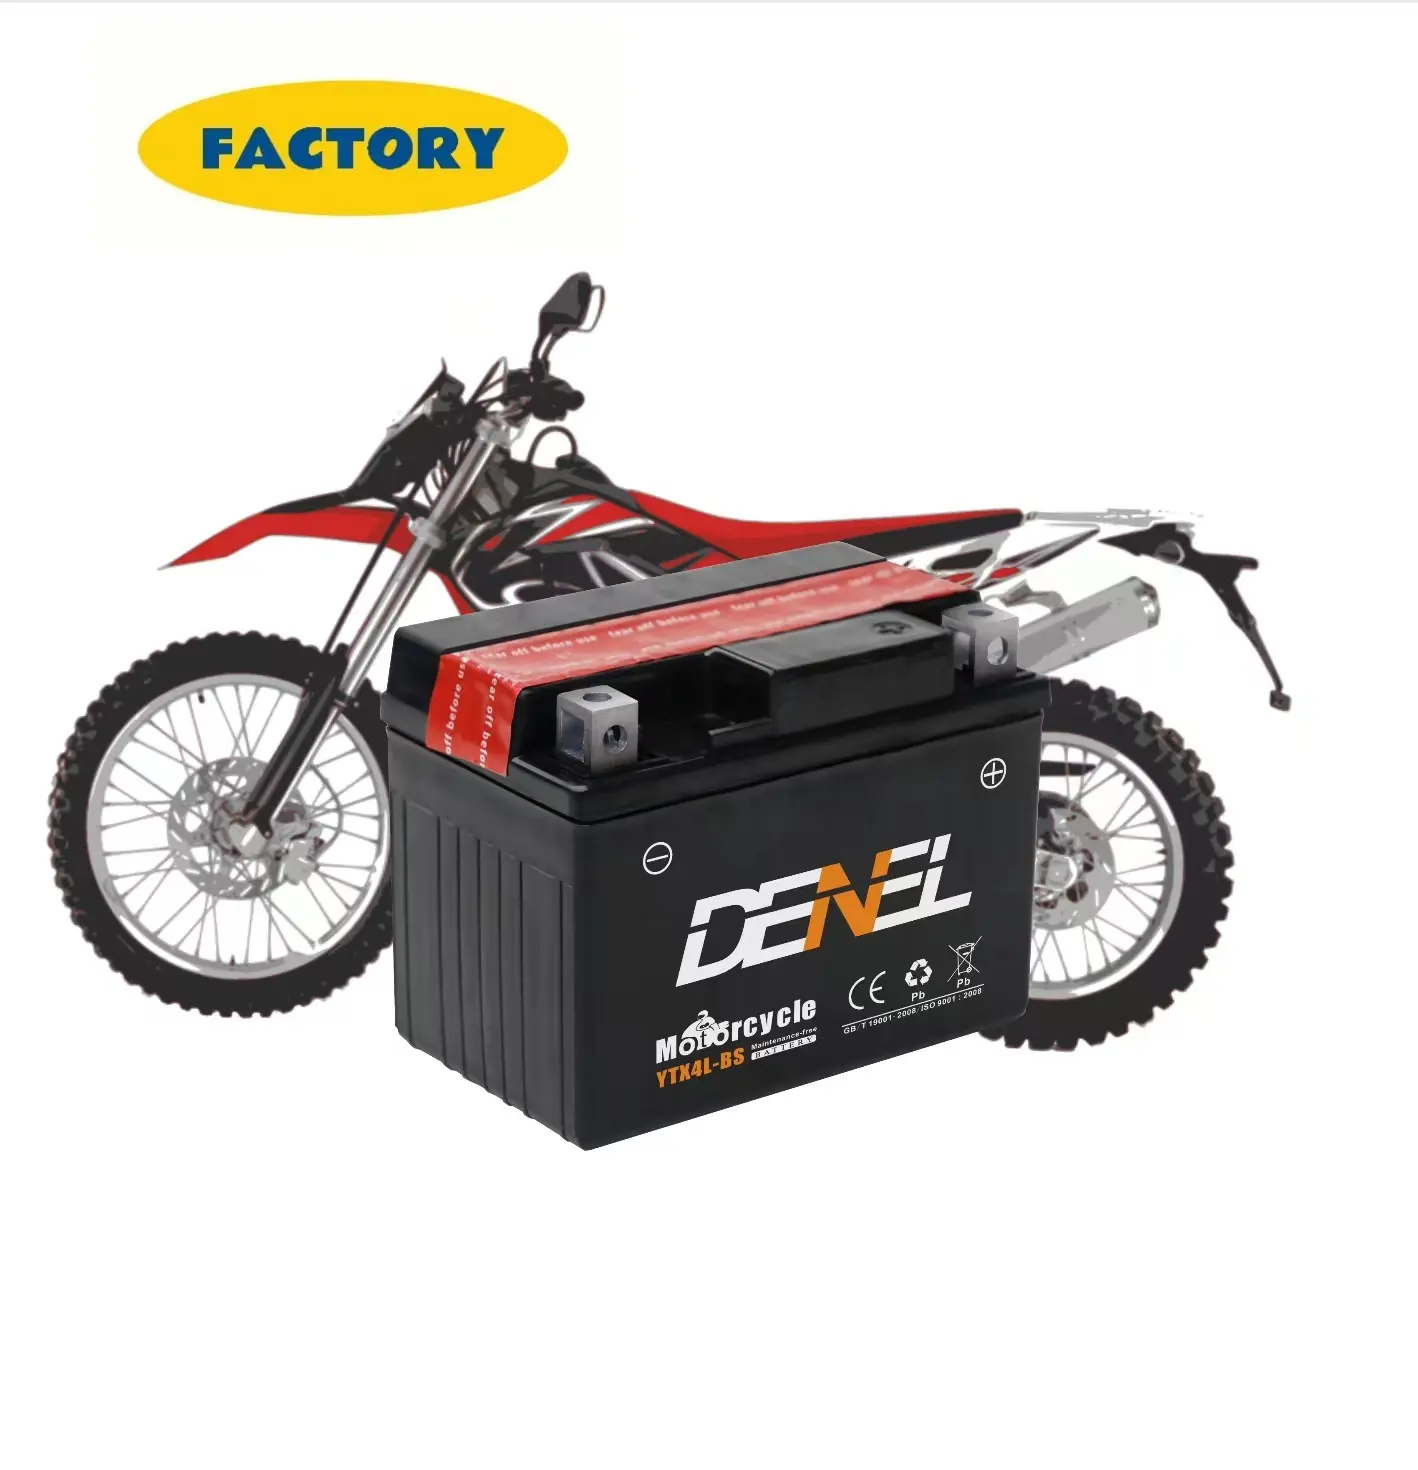 DENEL-Batería de moto eléctrica de 12v, piezas de repuesto de dos ruedas, imágenes, 6MF4L, fabricante de China, venta al por mayor